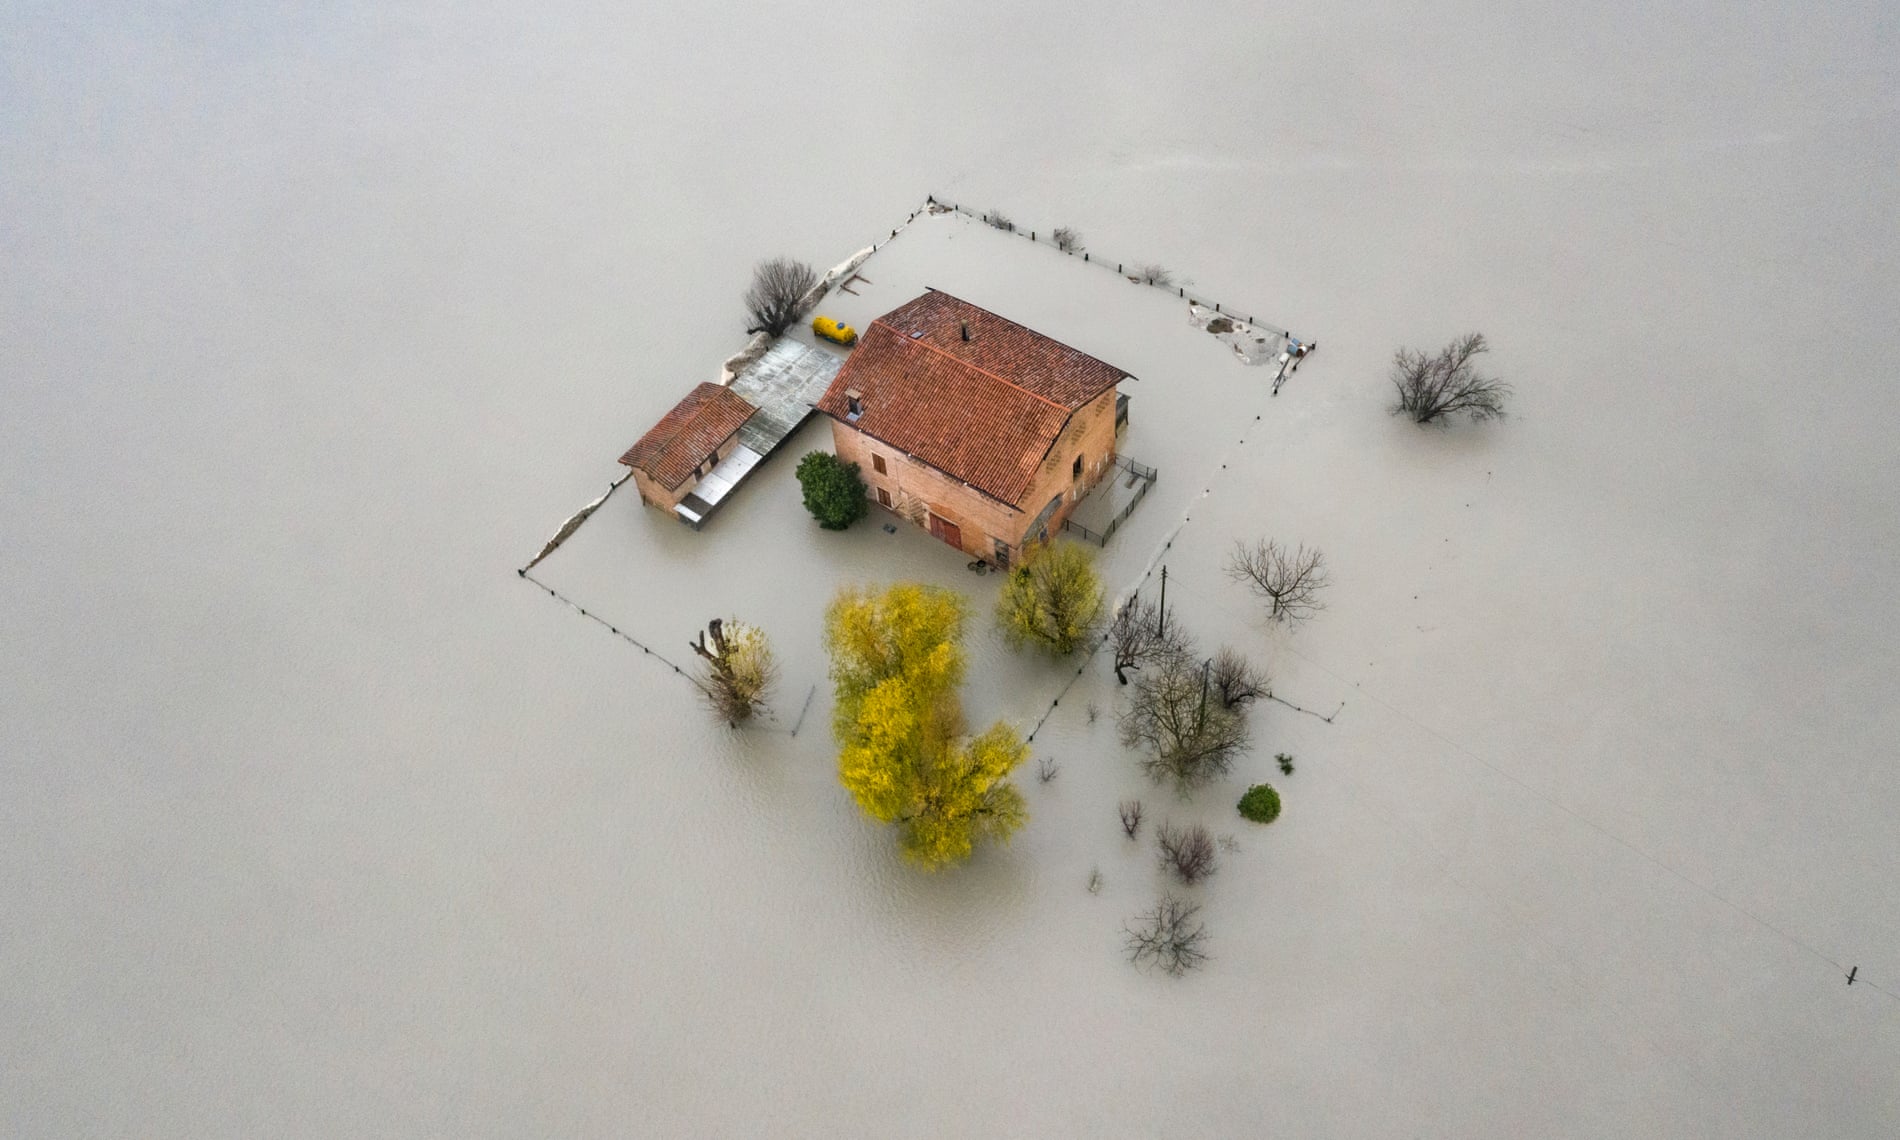 Κατοικία που ξεπροβάλλει σαν νησίδα, σε μια πλημμυρισμένη περιοχή στη Μόντενα της Ιταλίας, κέρδισε βραβείο στην κατηγορία «Μέλλον» σε μια εικόνα που θα συναντούμε ολοένα και περισσότερο τα επόμενα χρόνια, εξαιτίας των ακραίων καιρικών φαινομένων 